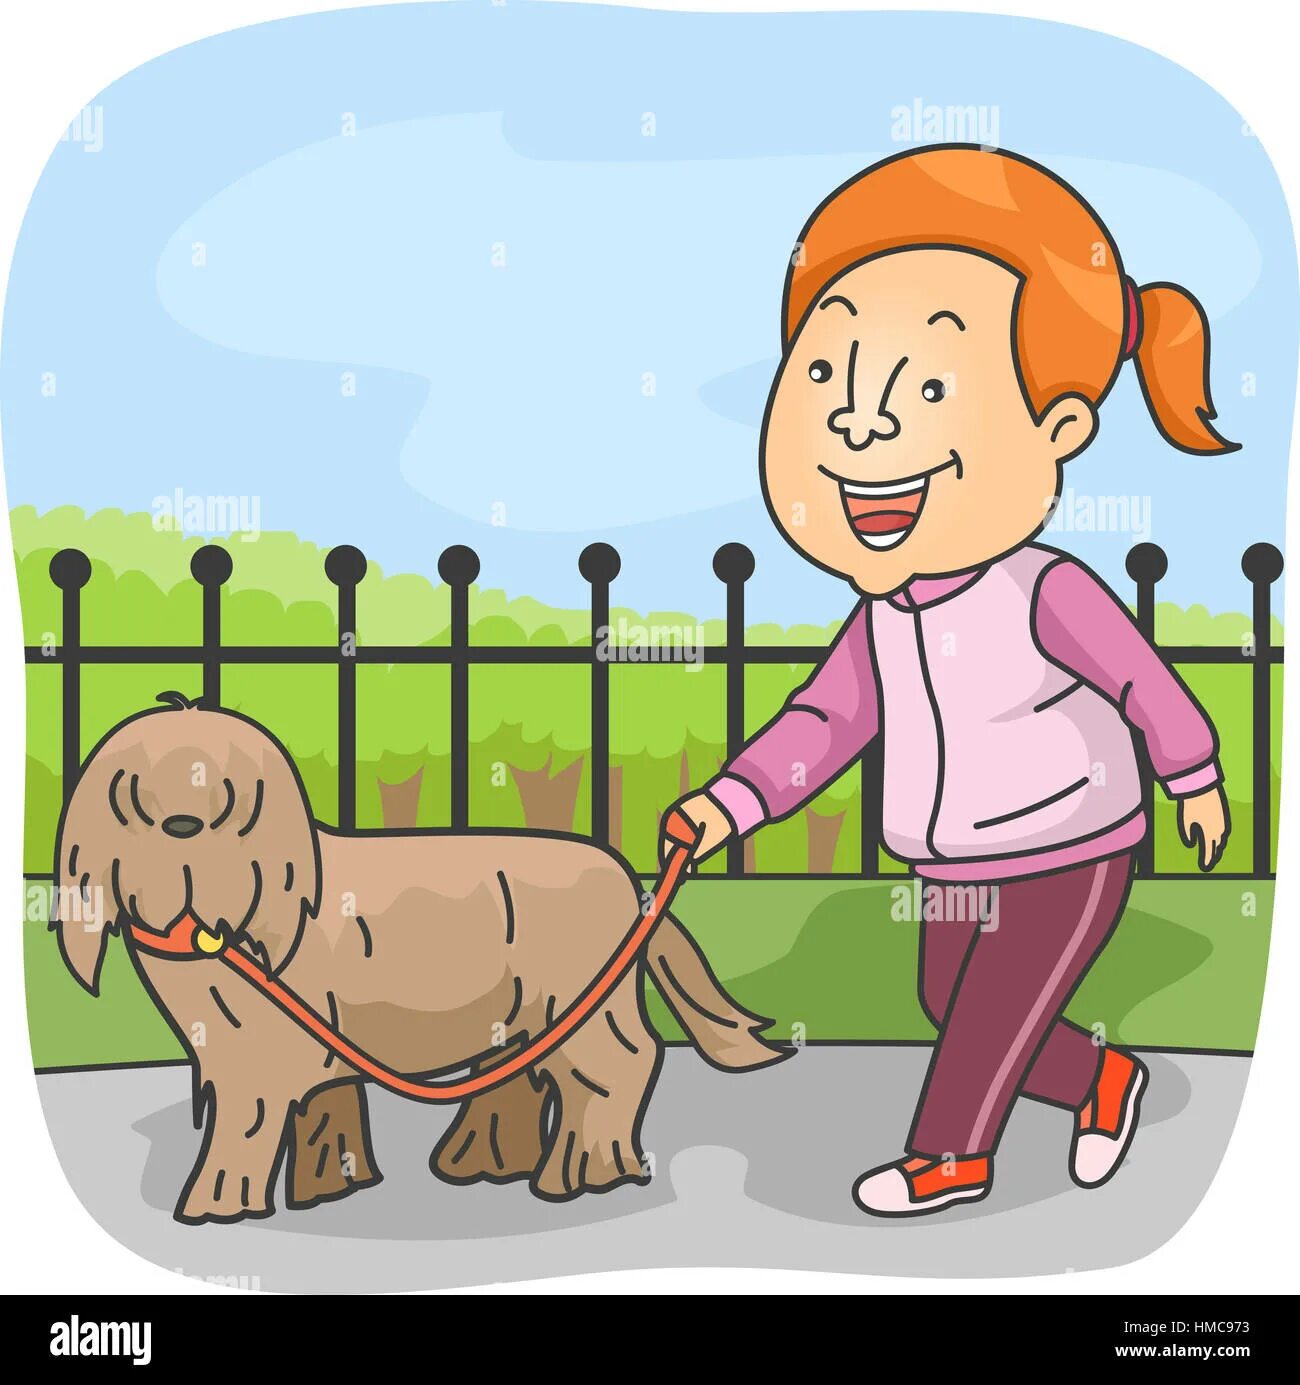 Like taking a walk. Walk the Dog cartoon. Walk the Dog Flashcard. Take the Dog for a walk cartoon. Walk the Dog Clipart.